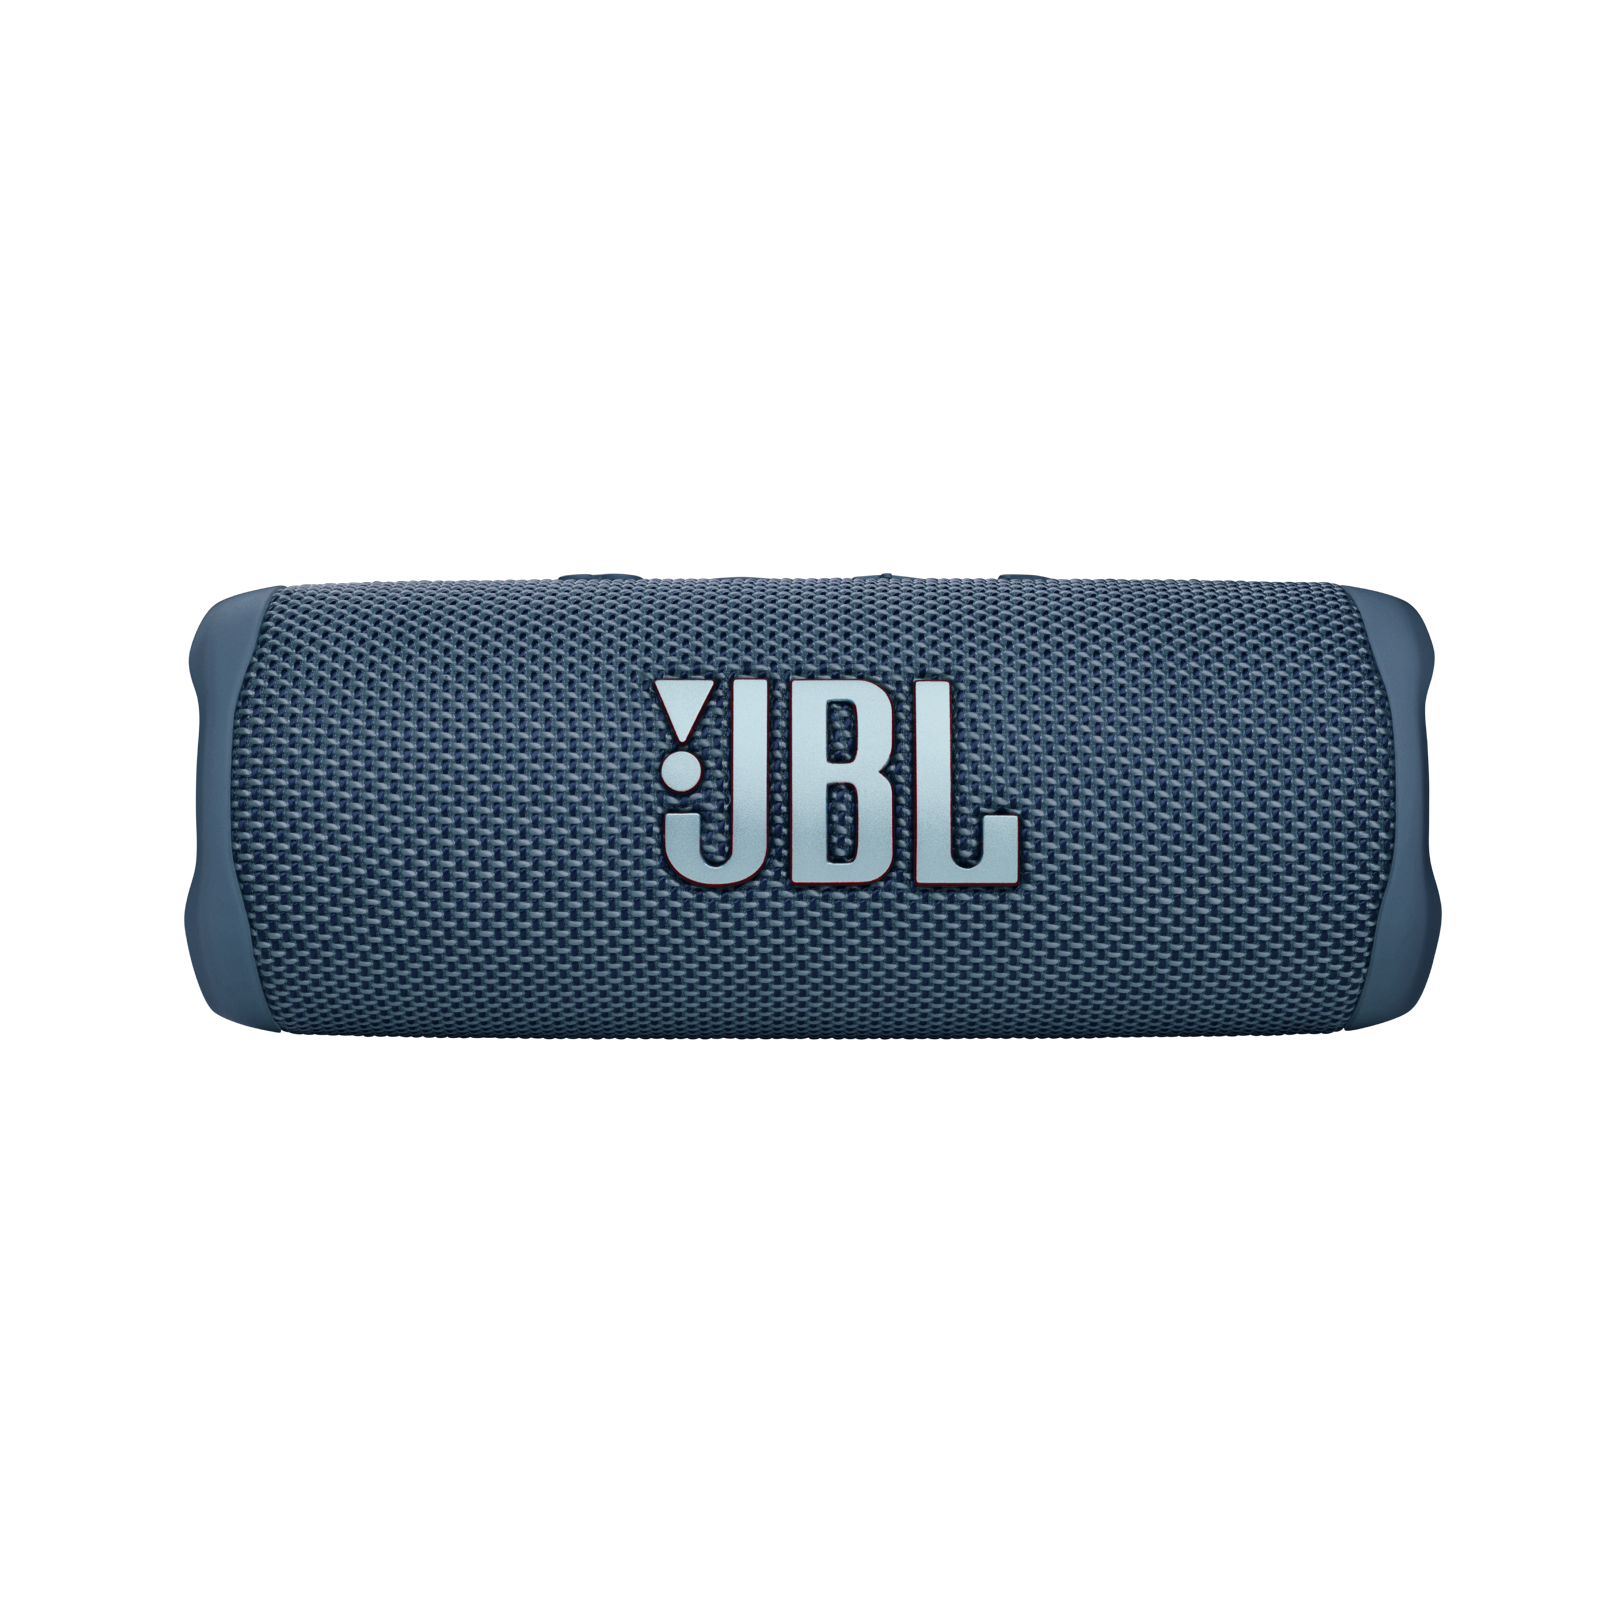 JBL Flip 6 | Portable Speaker | Blue